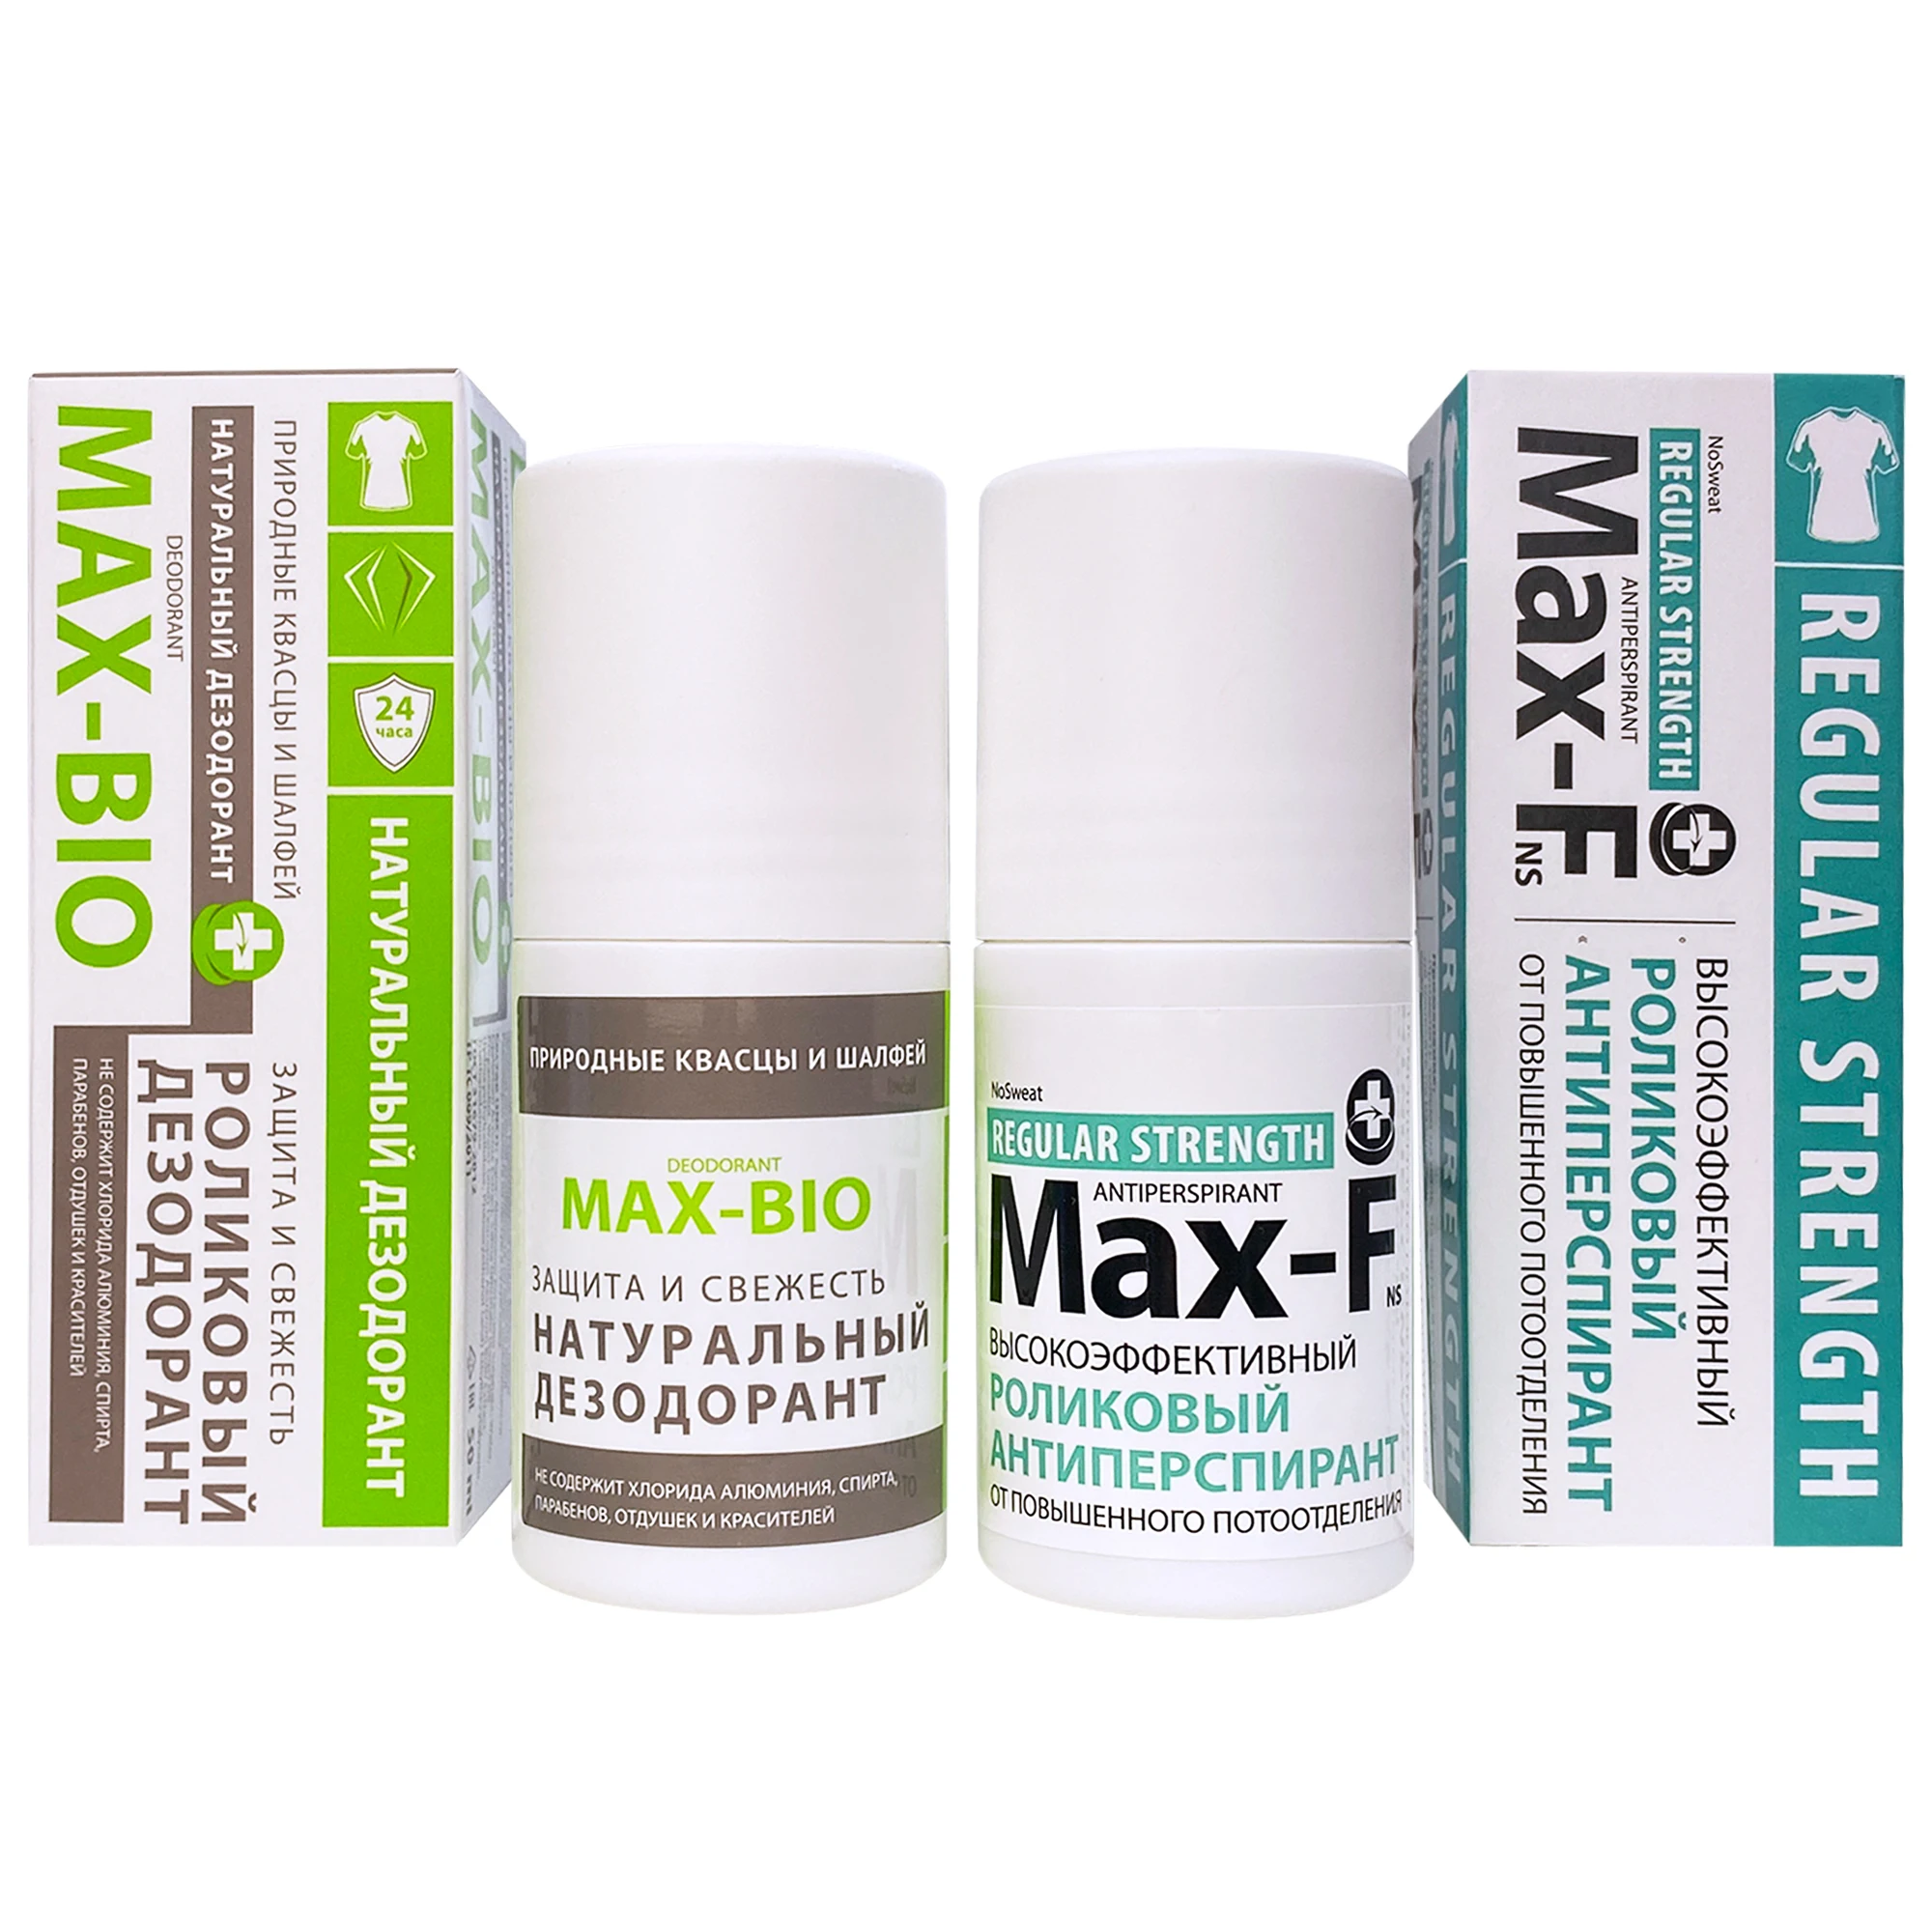 Комплект Max-F NoSweat 15% Антиперспирант и Натуральный дезодорант MAX-BIO  Защита и свежесть | AliExpress